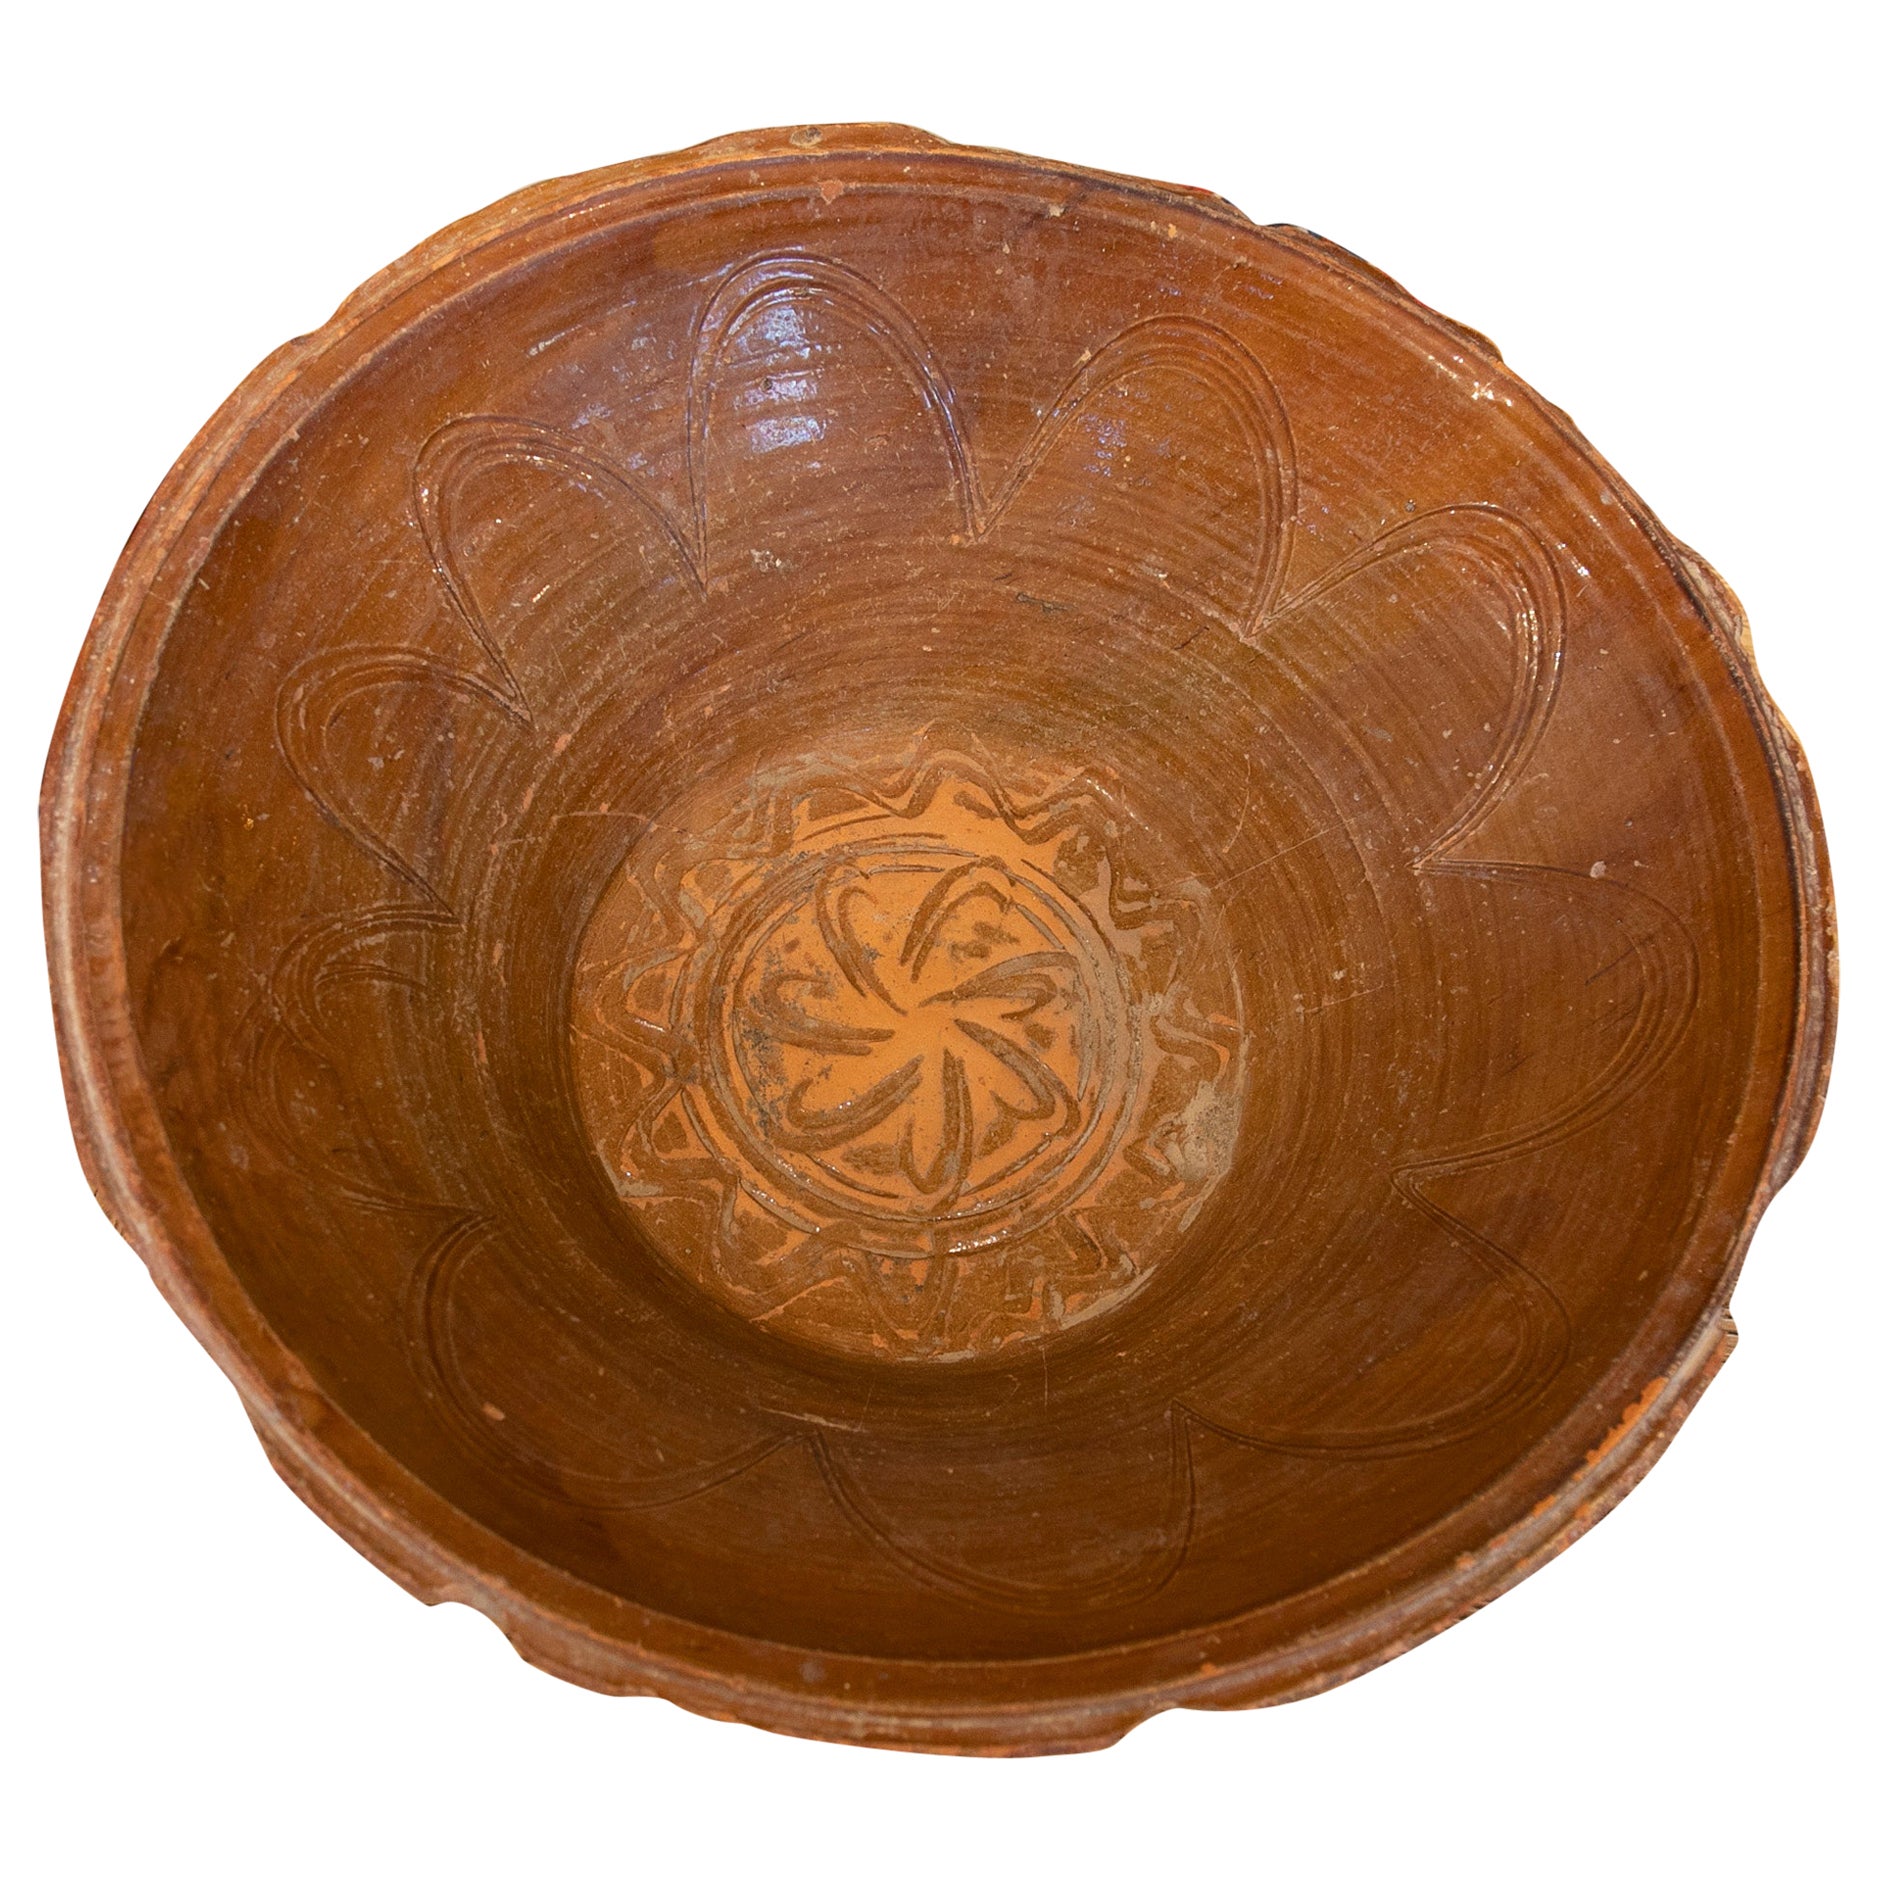 Petit bassin espagnol en céramique émaillée marron décoré dans la partie centrale